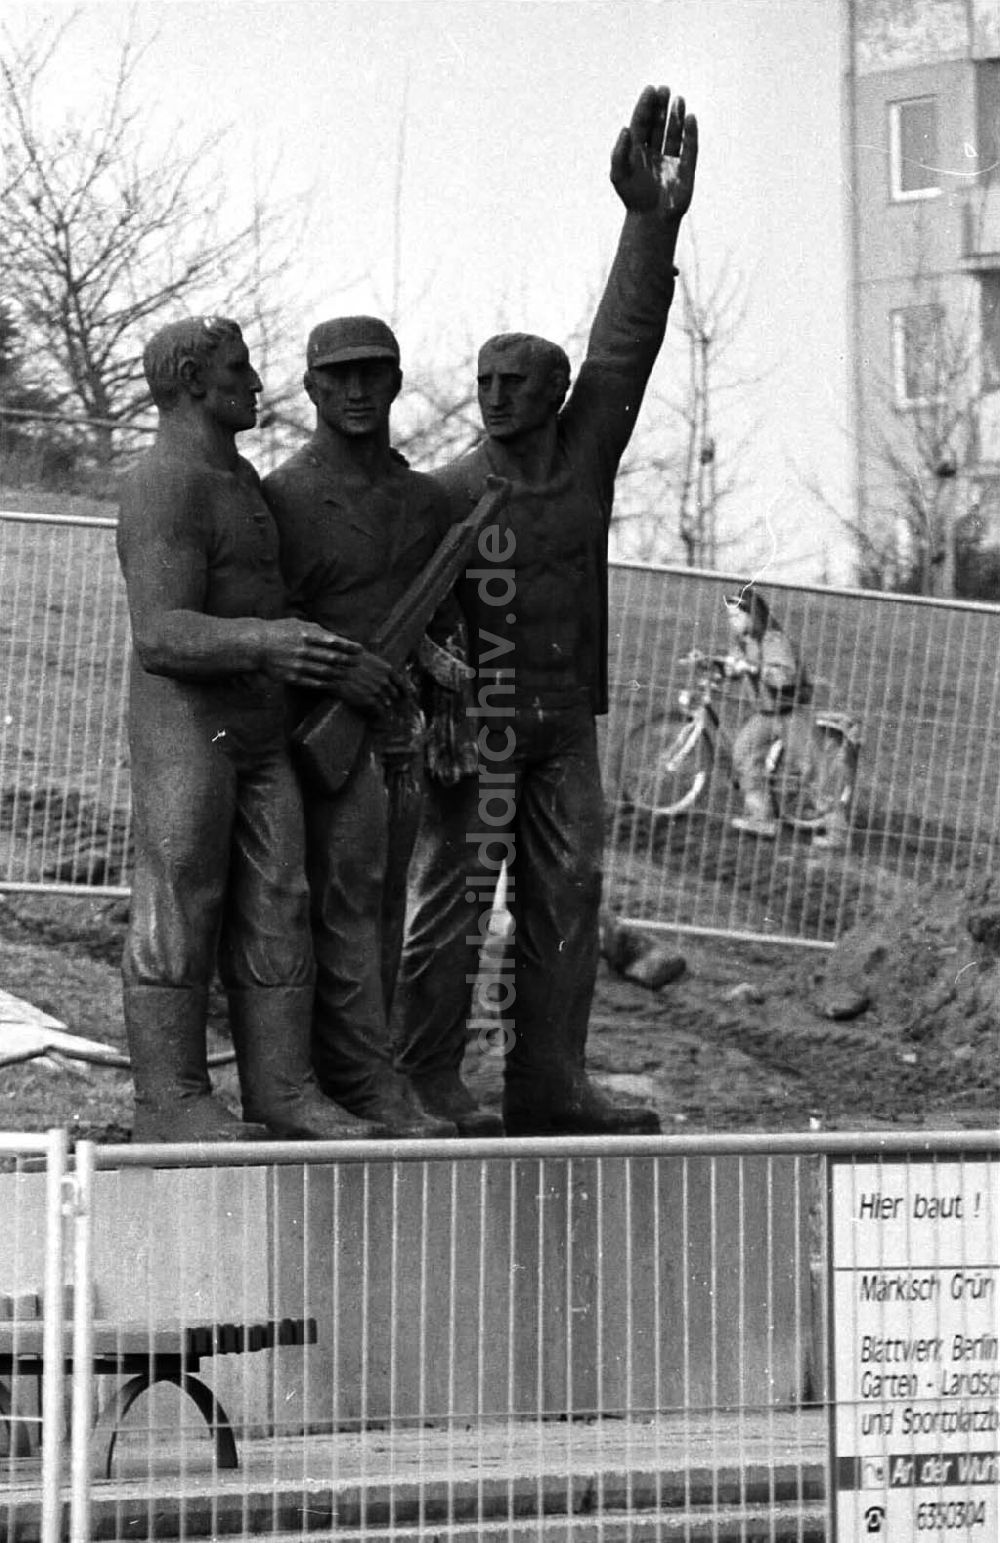 Berlin: 27.02.92 Kampfgruppendenkmal Berlin